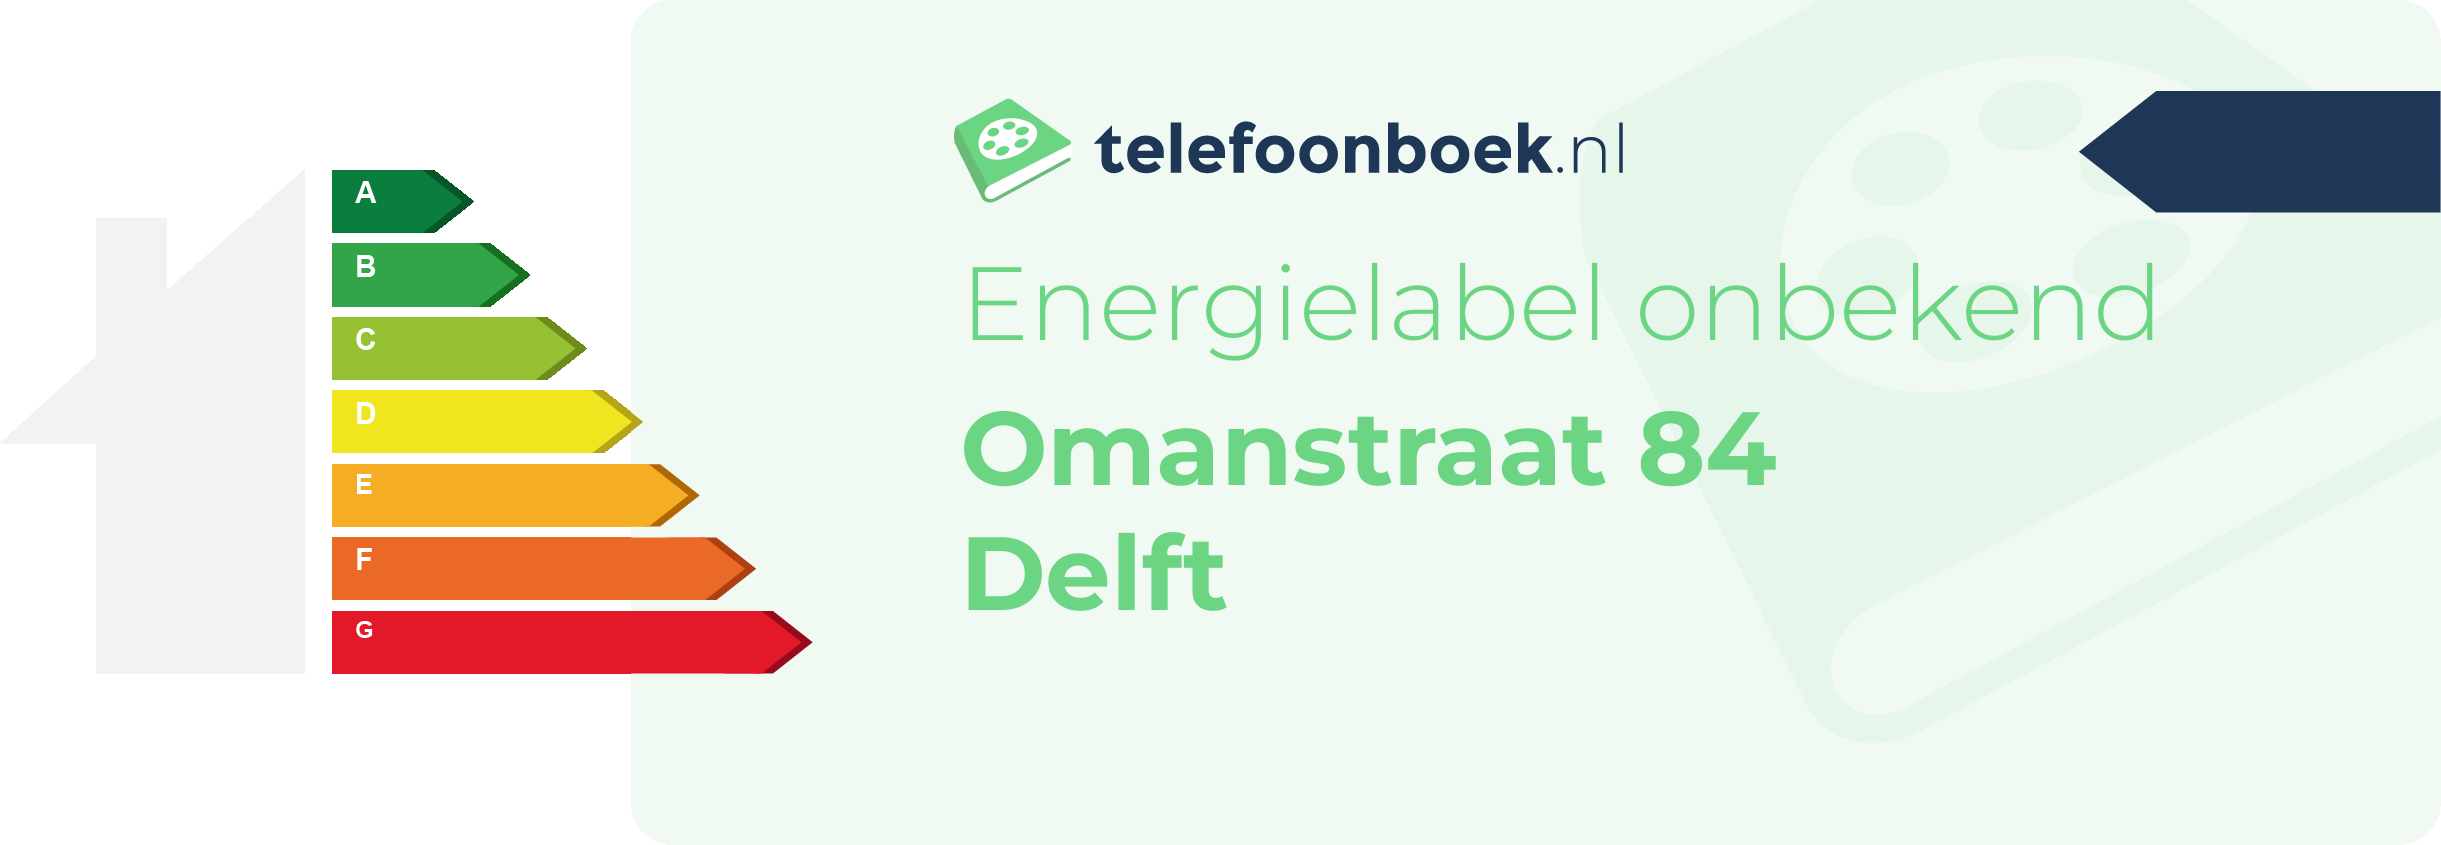 Energielabel Omanstraat 84 Delft